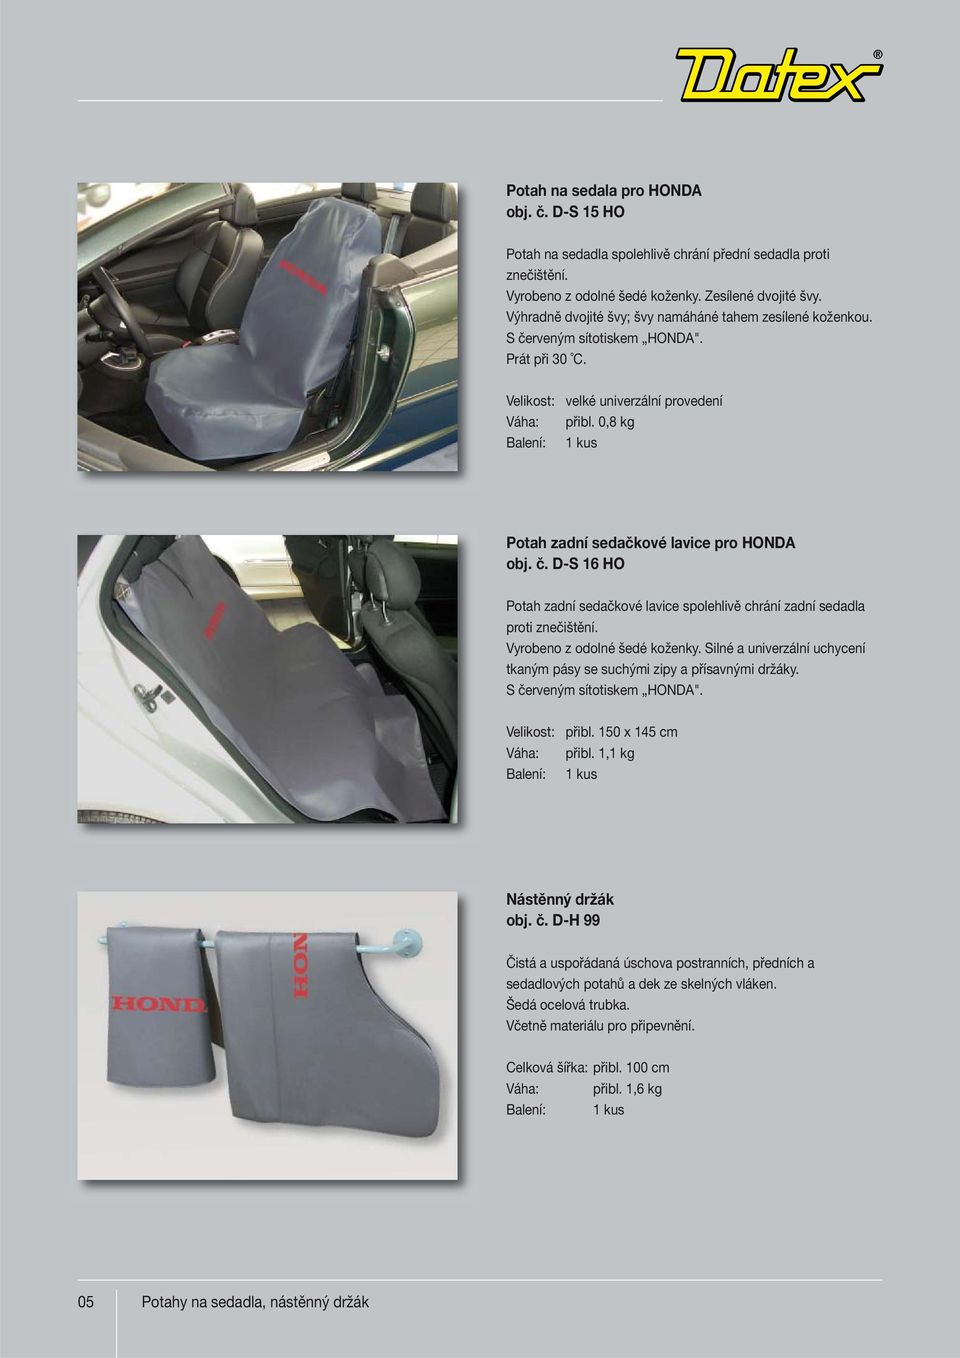 0,8 kg Potah zadní sedačkové lavice pro HONDA obj. č. D-S 16 HO Potah zadní sedačkové lavice spolehlivě chrání zadní sedadla proti znečištění. Vyrobeno z odolné šedé koženky.